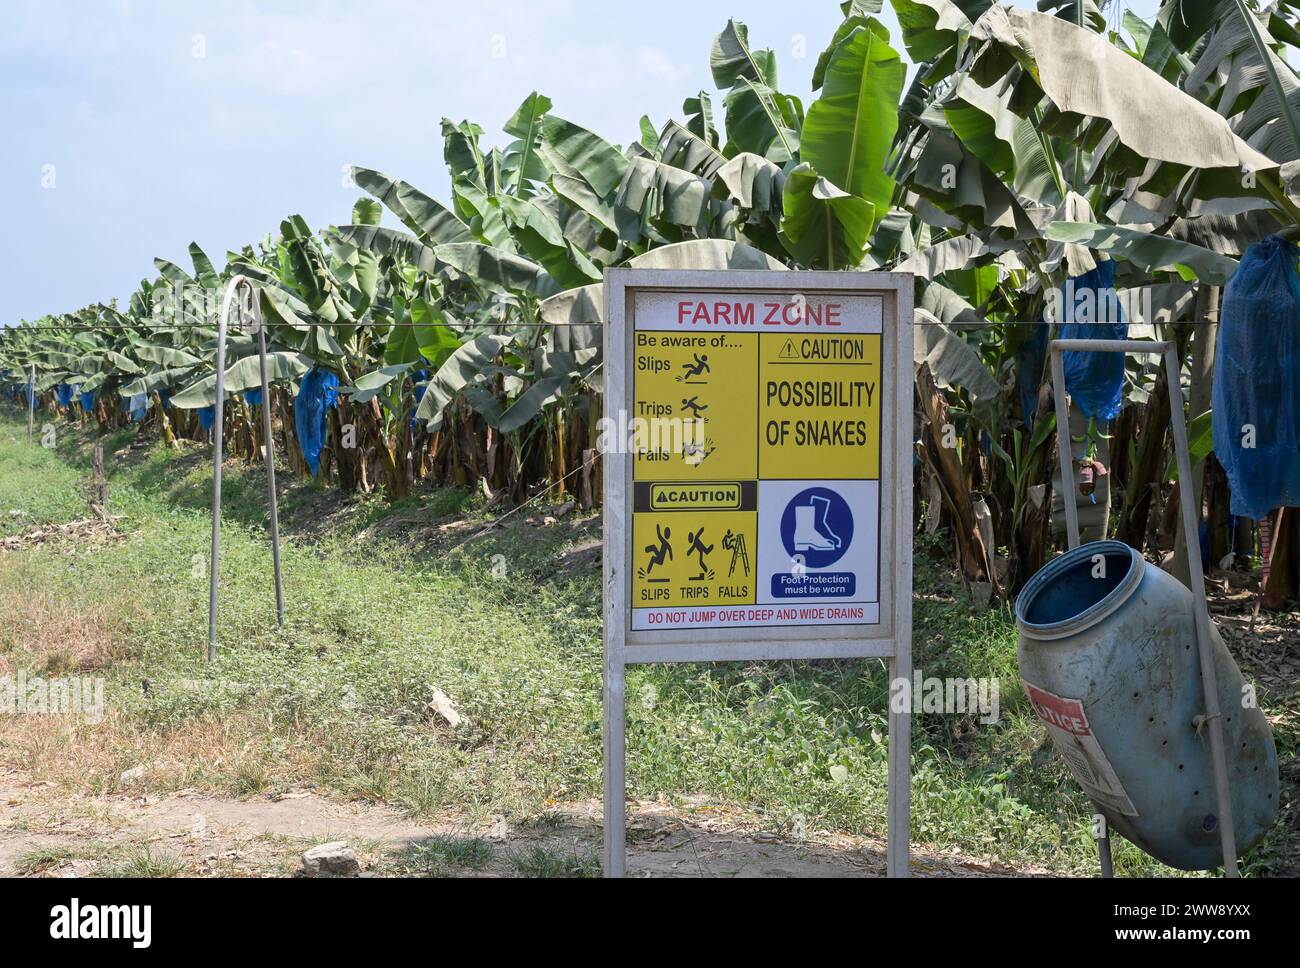 GHANA, Region Volta, französisches Eigentum Golden Exotics Ltd. Große Plantage für Bananenanbau für den Export , die Farm wird mit Wasser des Volta-Flusses über Kanäle bewässert, Warnung vor Schlange / GHANA, Bananenanbau auf Plantage der französischen Golden Exotics Ltd. Für den Export, die Farm wird über Wasser aus Kanälen vom Volta Fluß bewässert Stockfoto